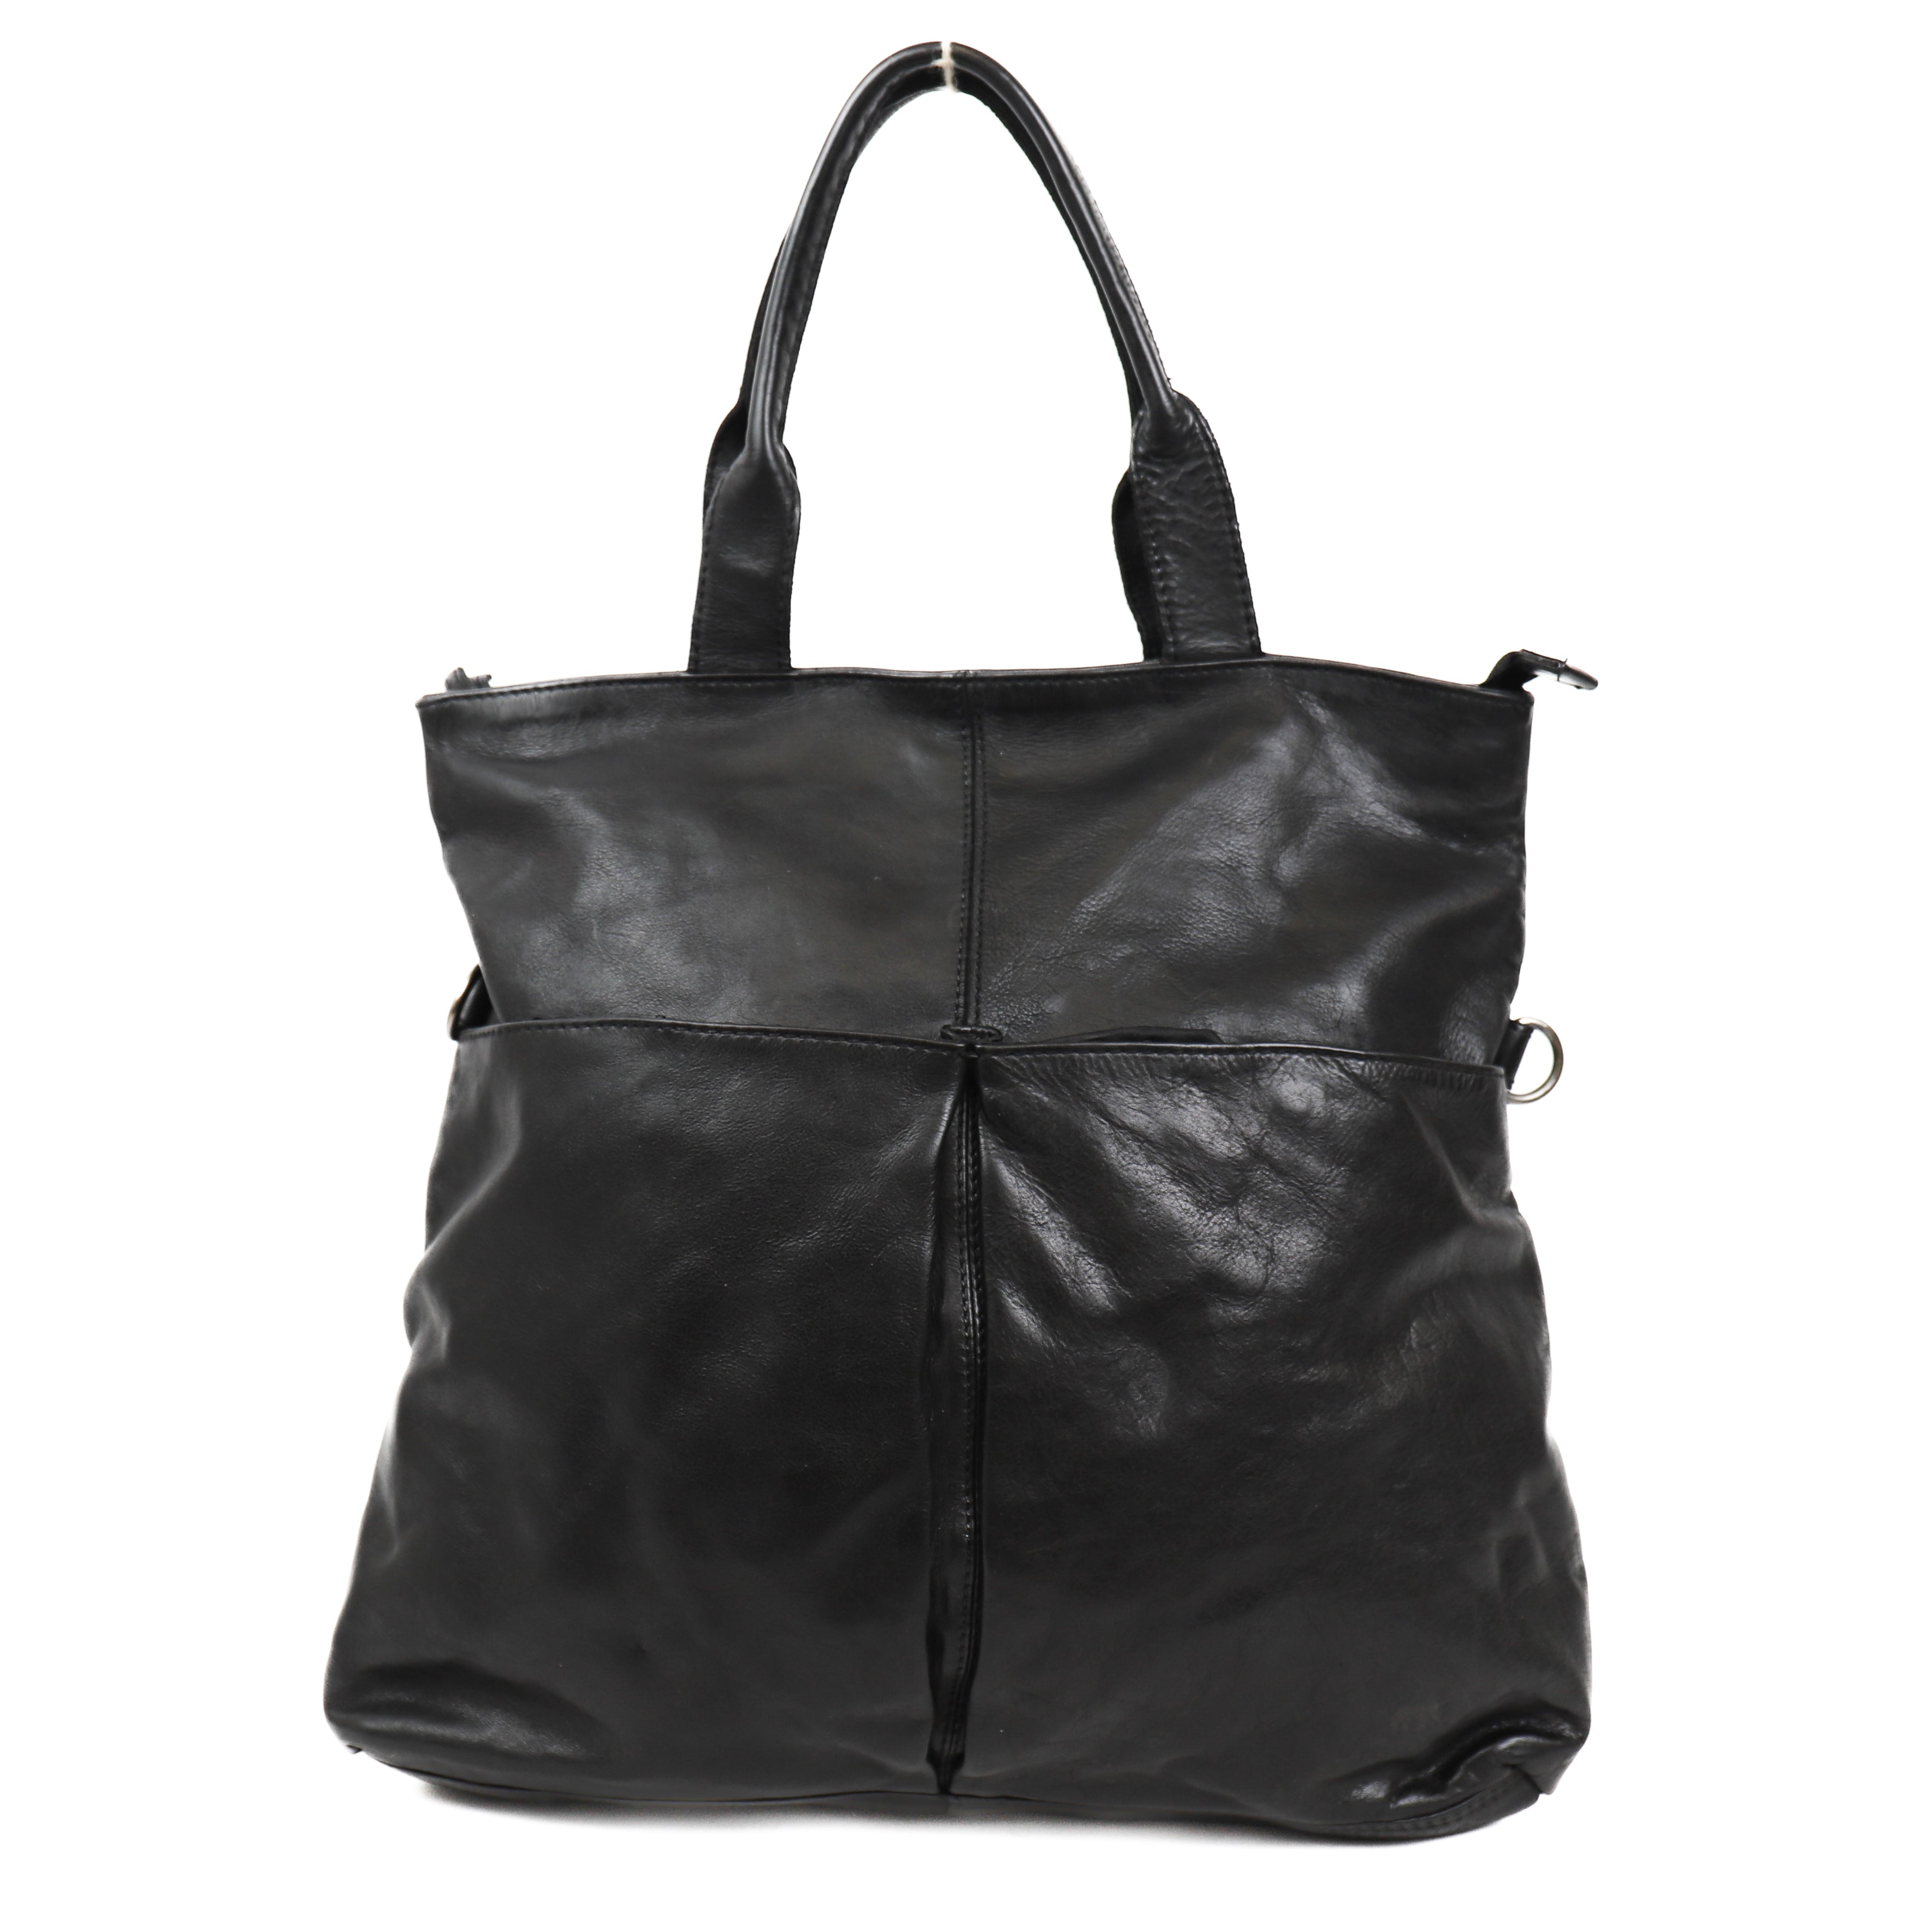 Hand/shoulder bag 'Juna' black